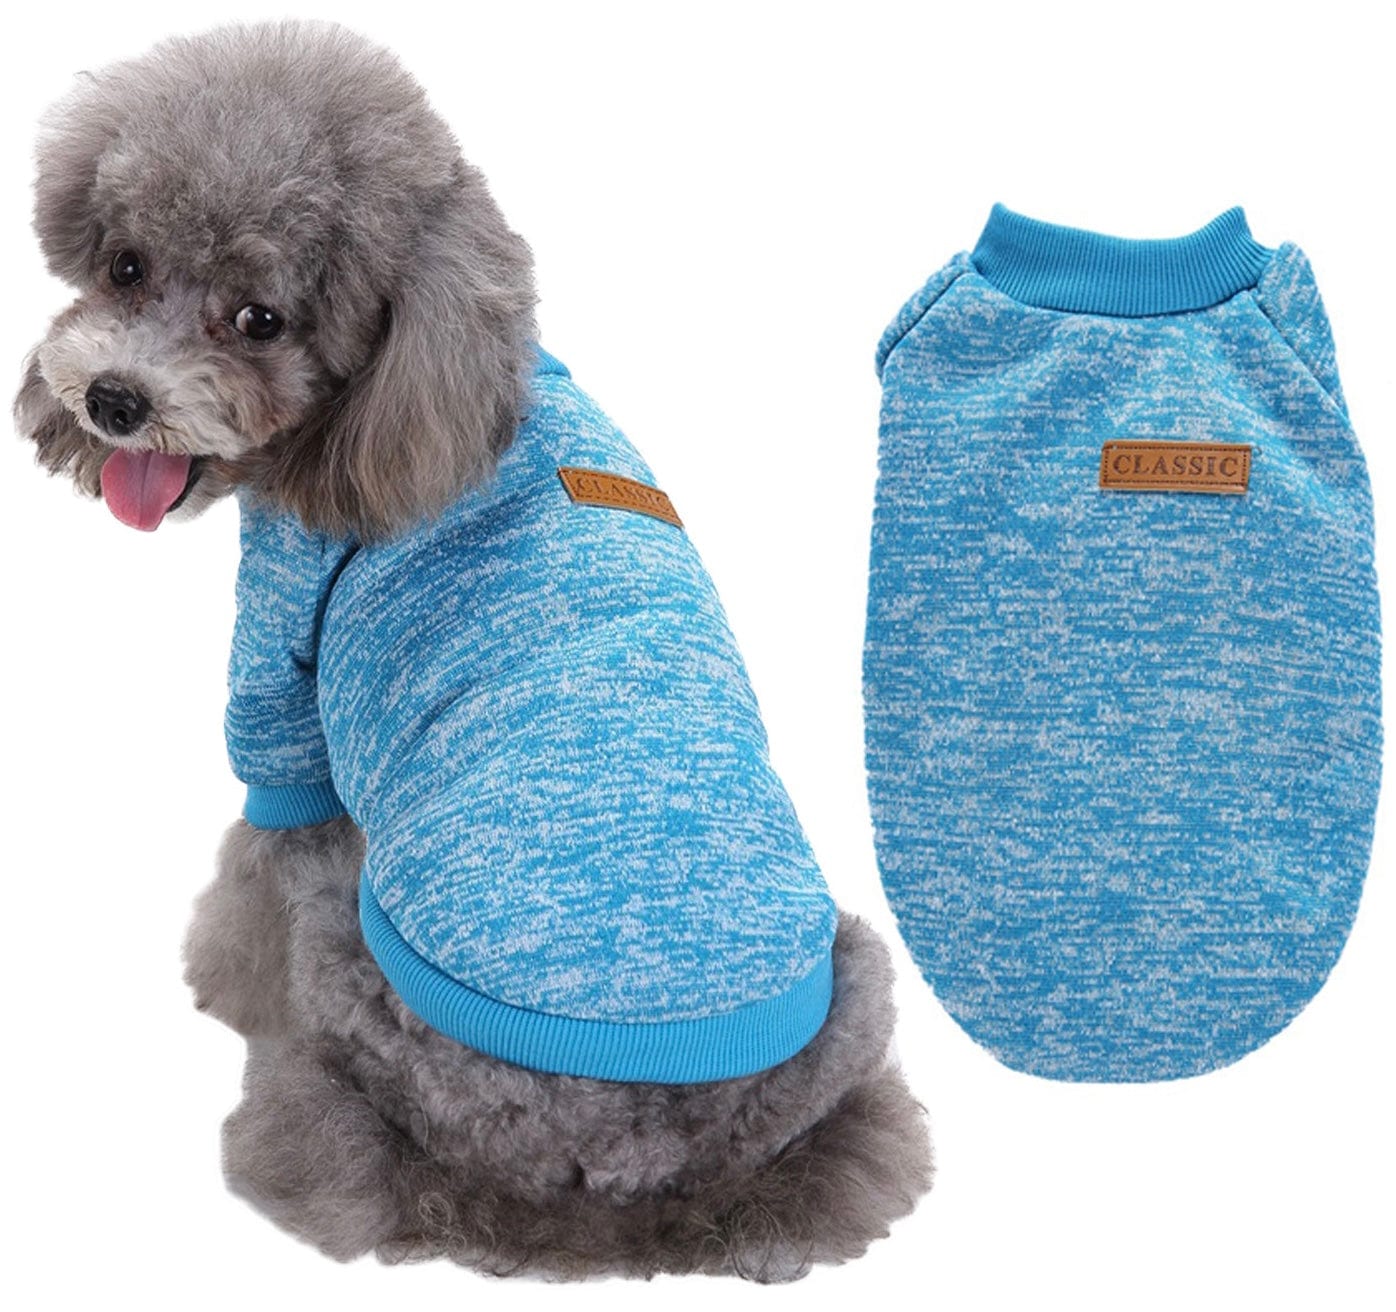 KUTKUT Small Dogs & Cats Classic Winter Clothes Knitwear Dog Sweater Soft Thickening Warm Pup Dogs Shirt Puppy Sweater for Small Dogs Shihtzu, Maltese, Yorkii etc - kutkutstyle